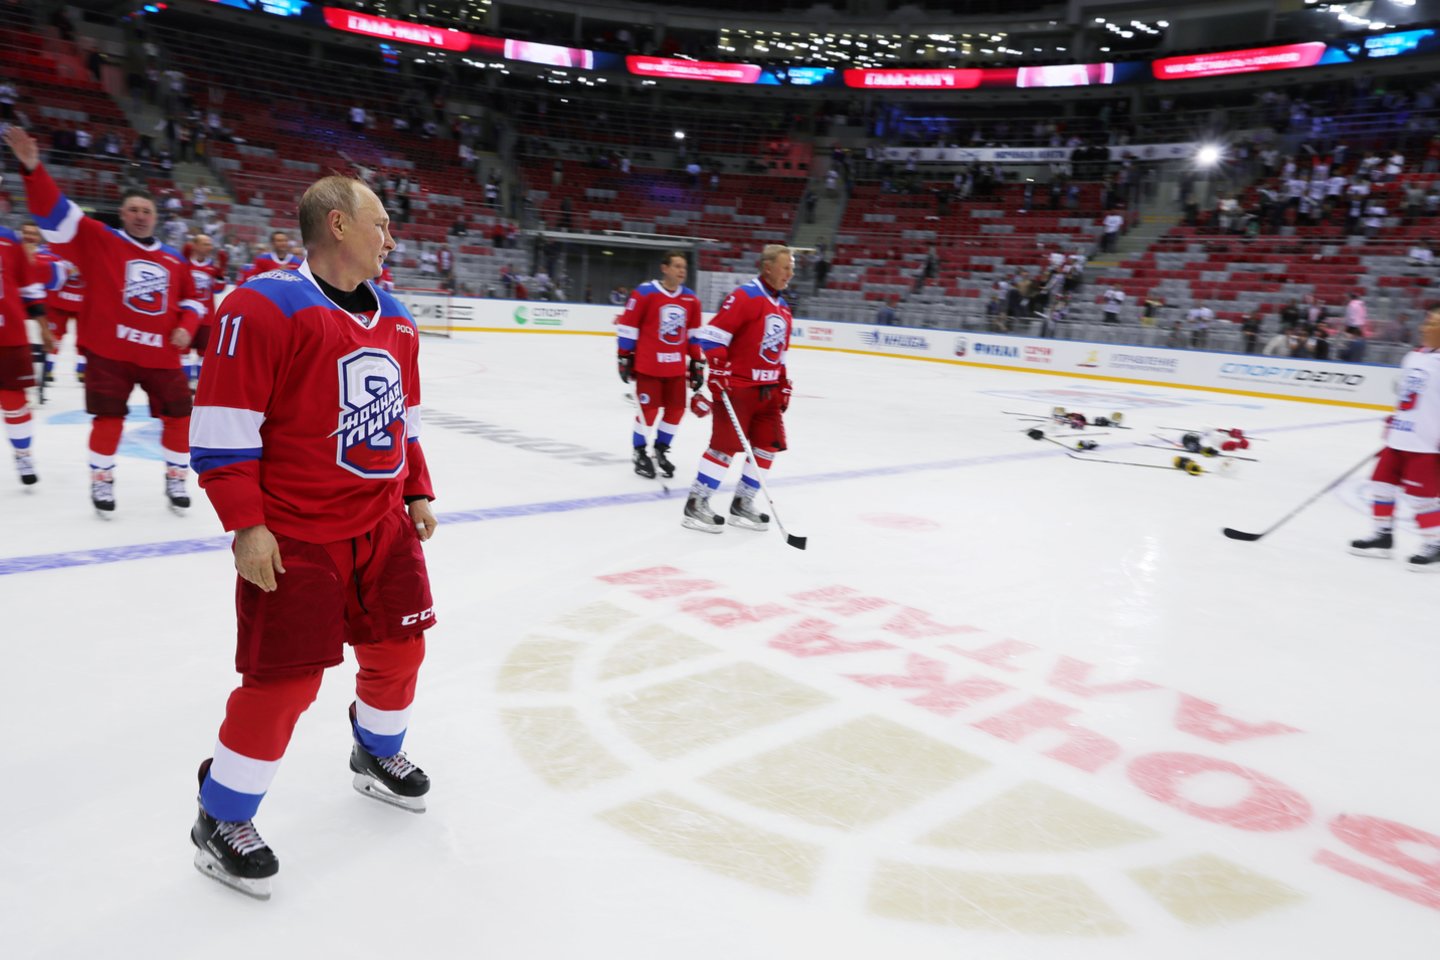 V.Putinas sudalyvavo ledo ritulio rungtynėse ir pelnė net 10 įvarčių<br> Scanpix.com nuotr.